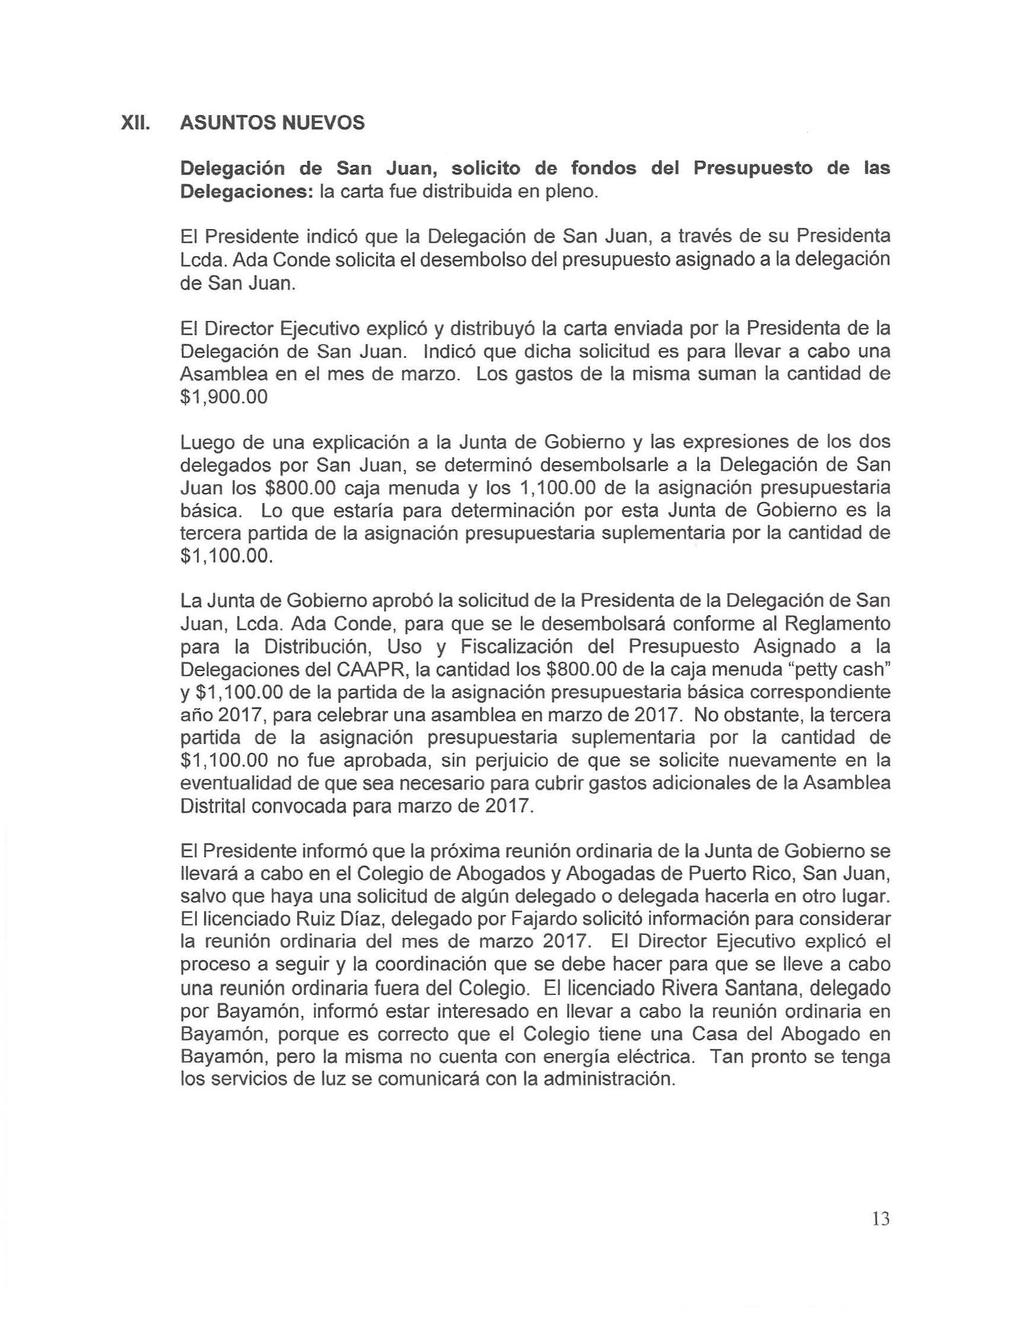 XII. ASUNTOS NUEVOS Delegación de San Juan, solicito de fondos del Presupuesto de las Delegaciones: la carta fue distribuida en pleno.